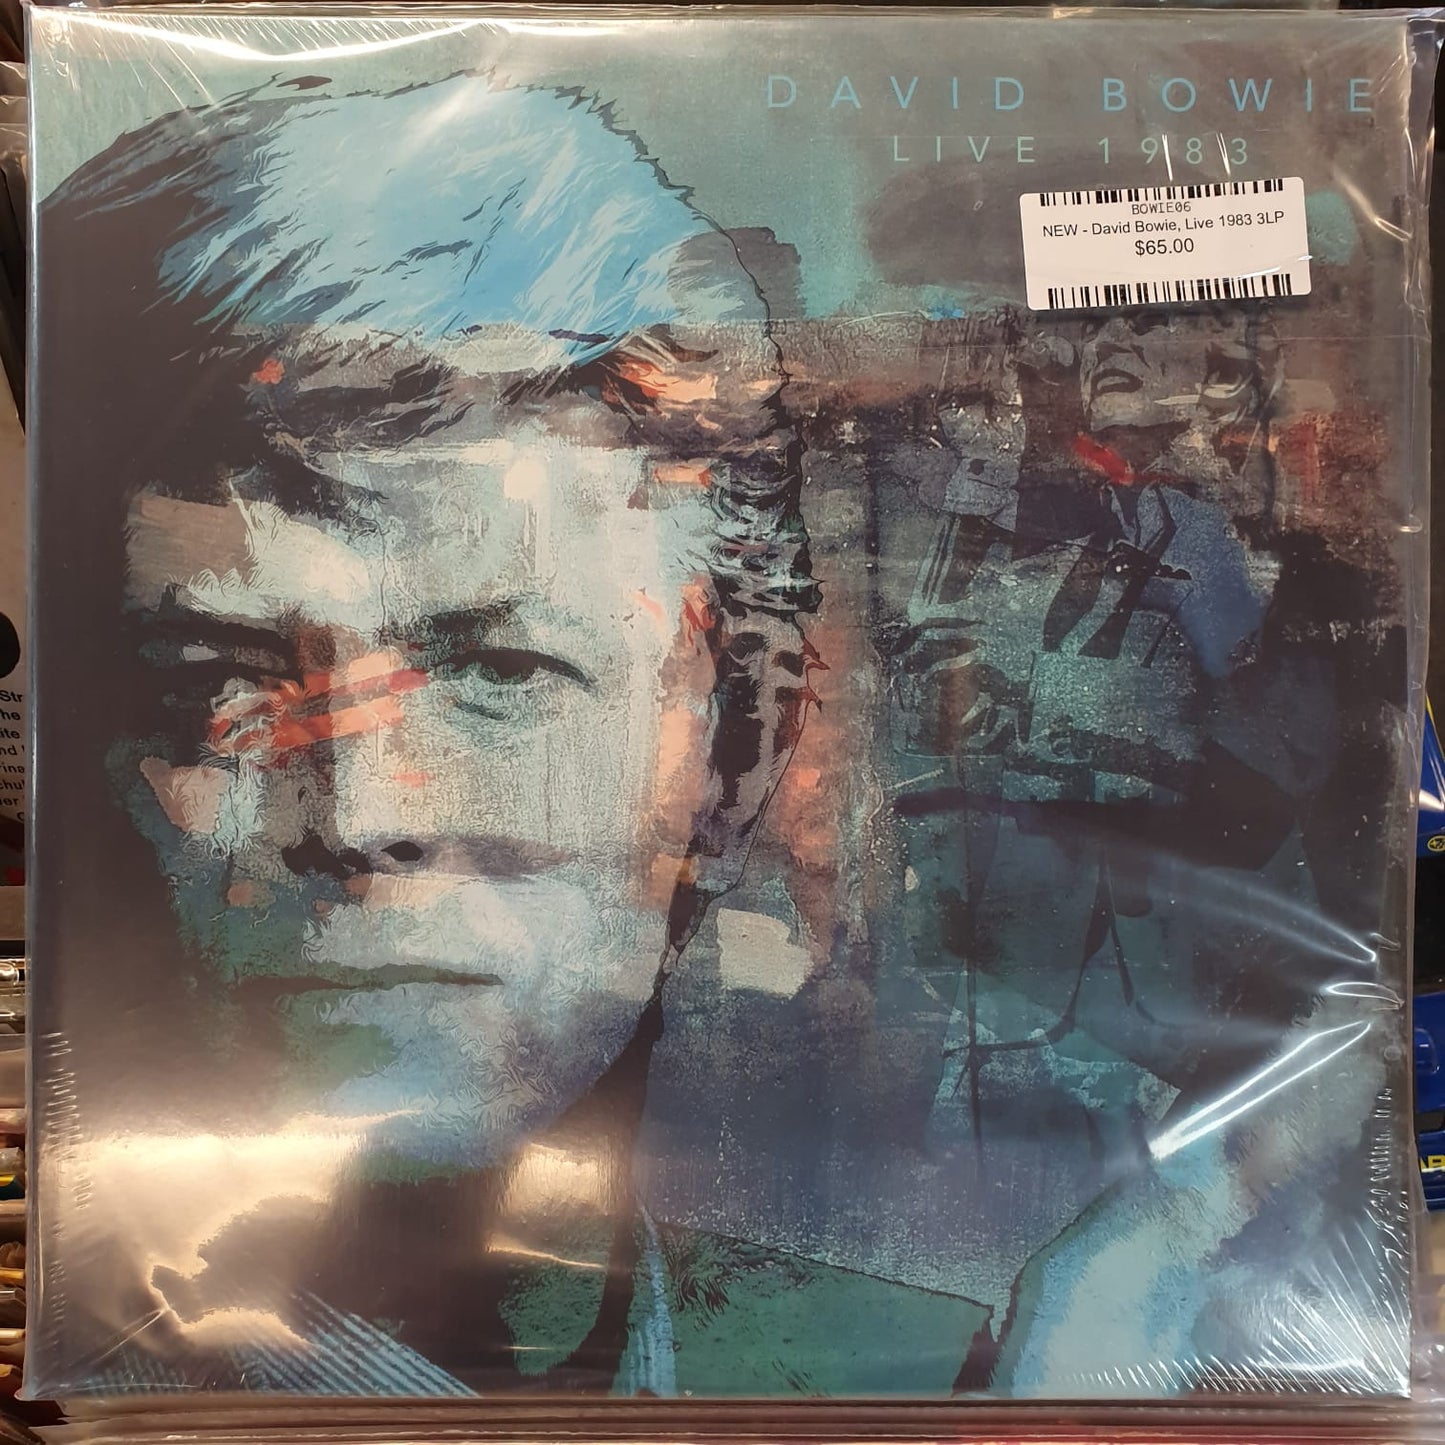 NEW - David Bowie, Live 1983 - 3LP White Vinyl